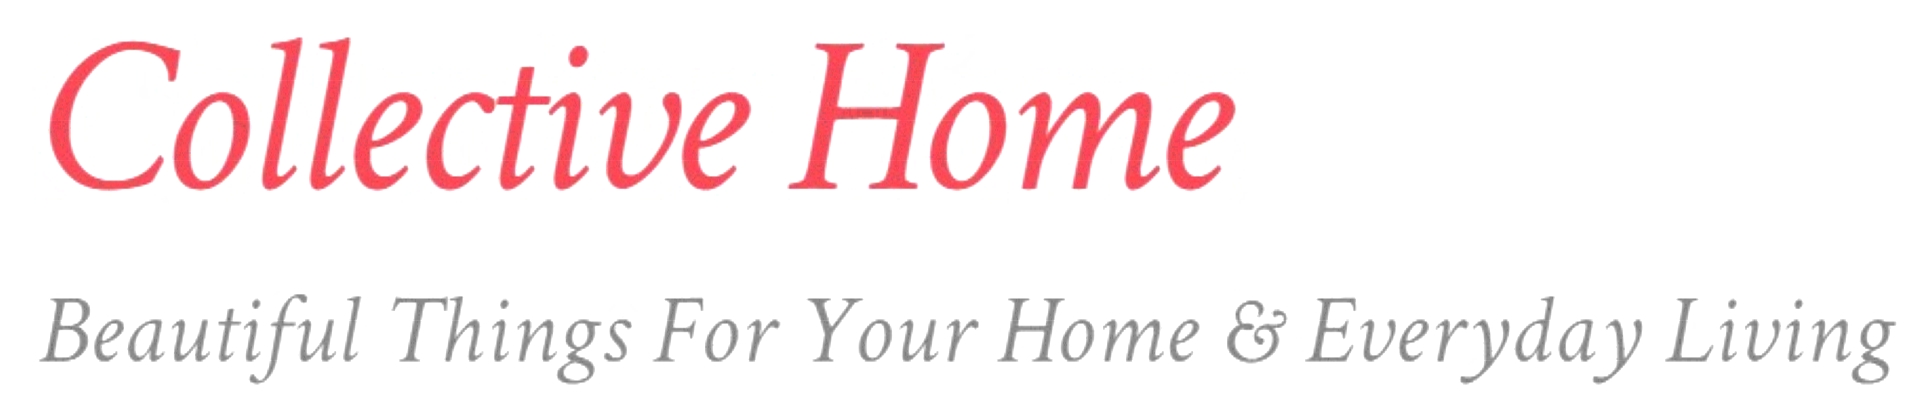 Collective Home Reps Logo